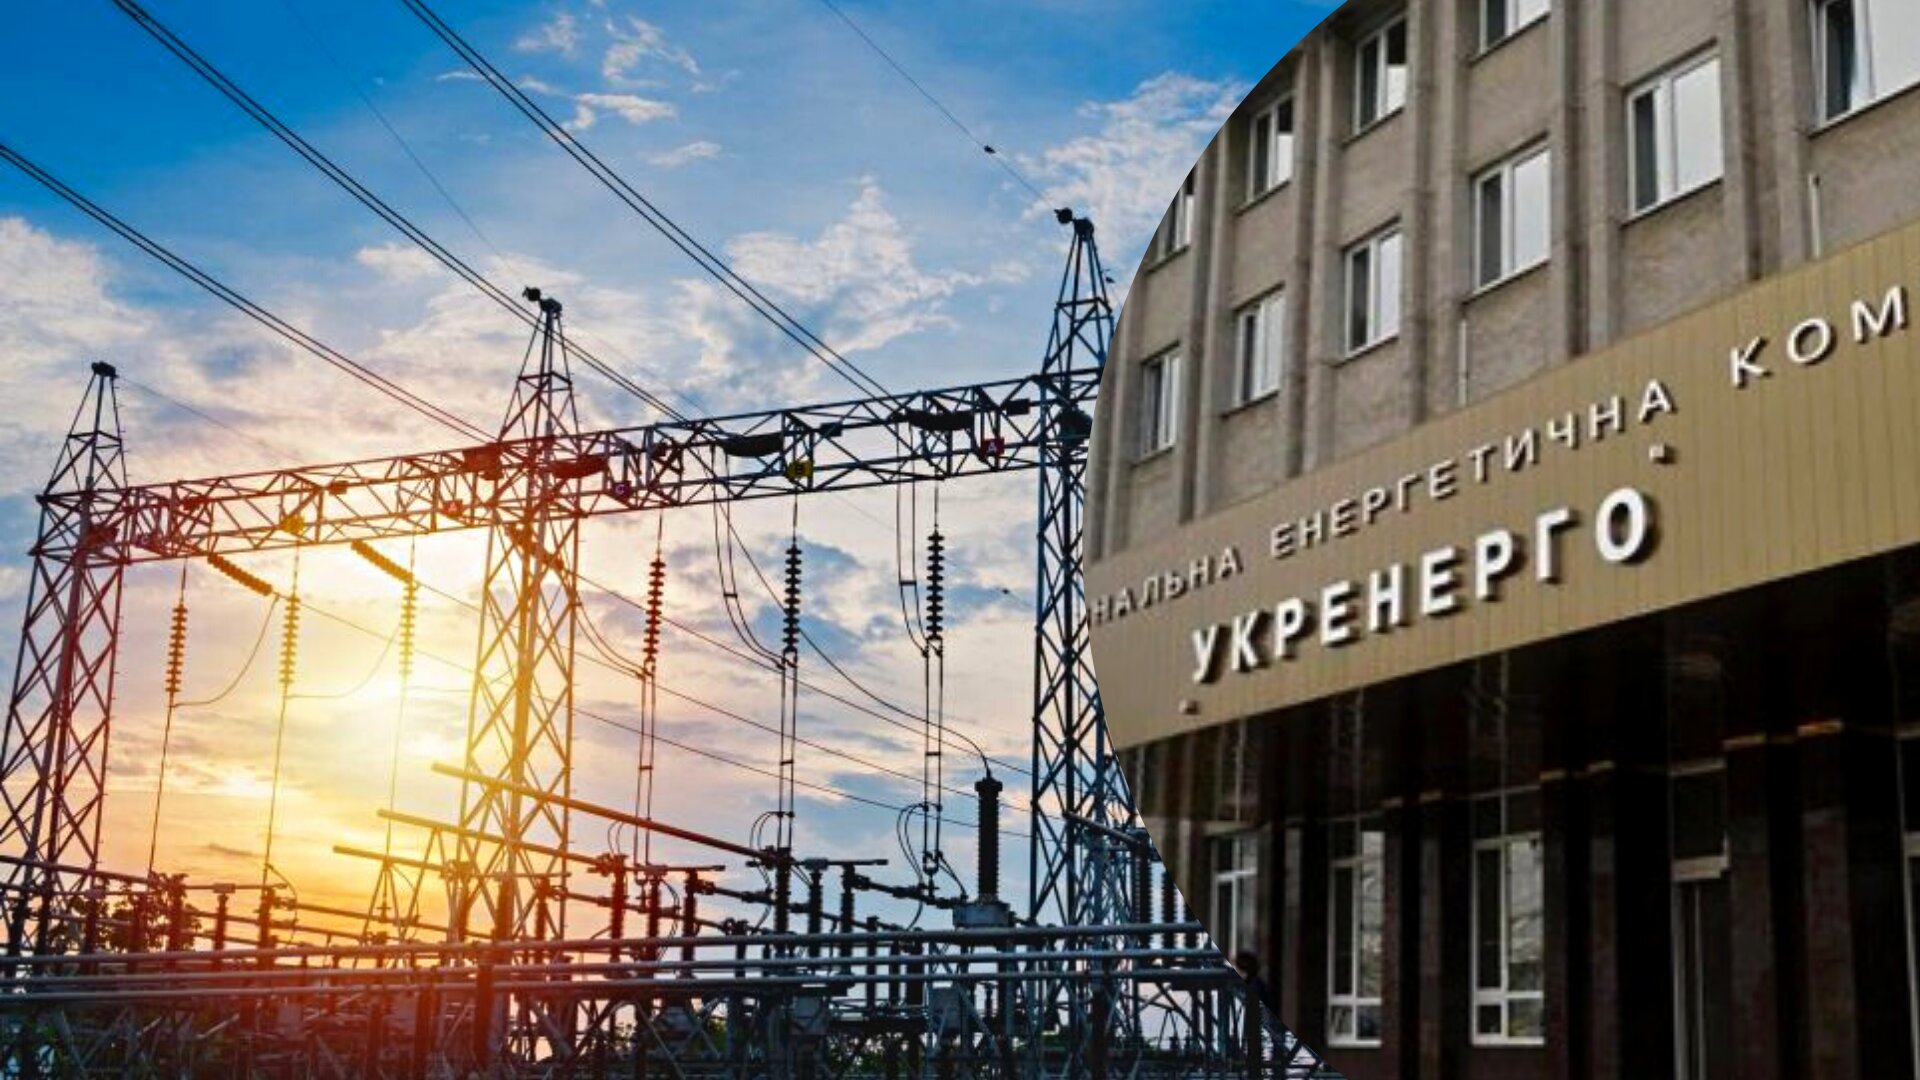 В Україні триває відновлення енергосистеми після ракетної атаки. На атомних станціях триває процес завантаження блоків, які відключали через пошкодження електромереж.